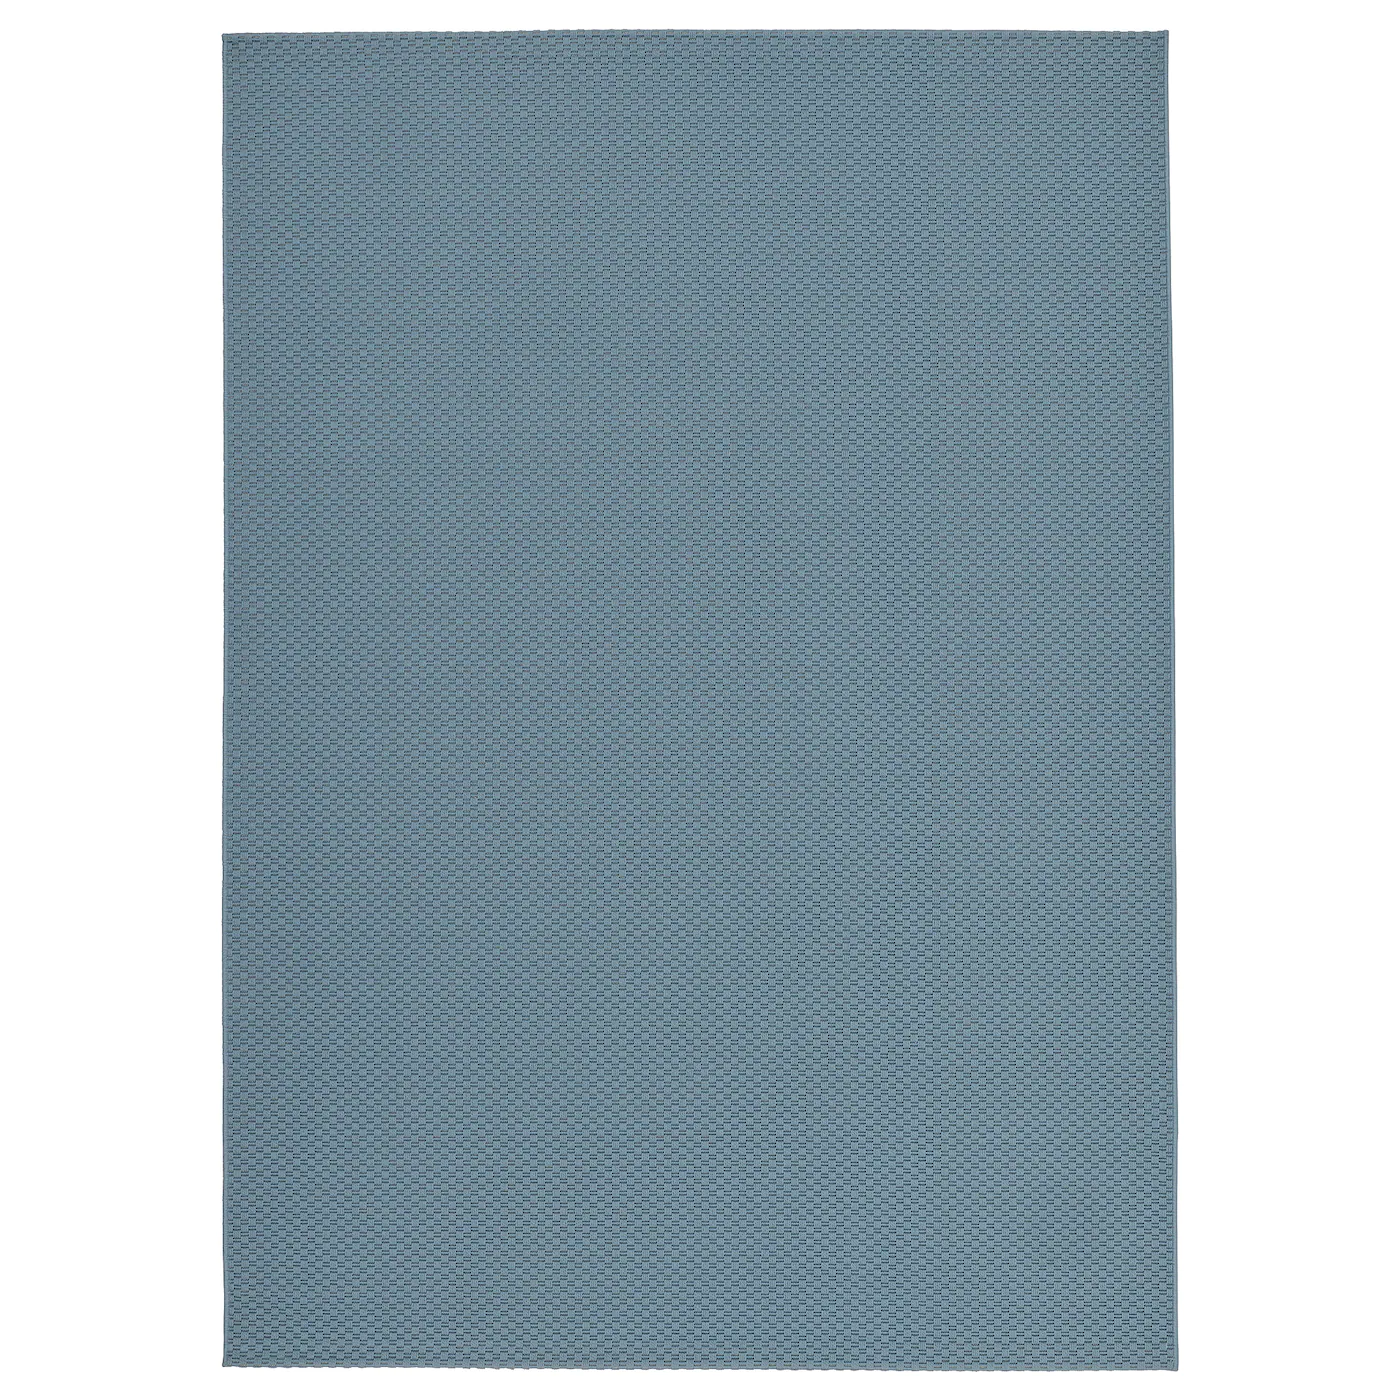 morum-alfombra-int-exterior-azul-claro_0918186_pe786130_s5.jpg